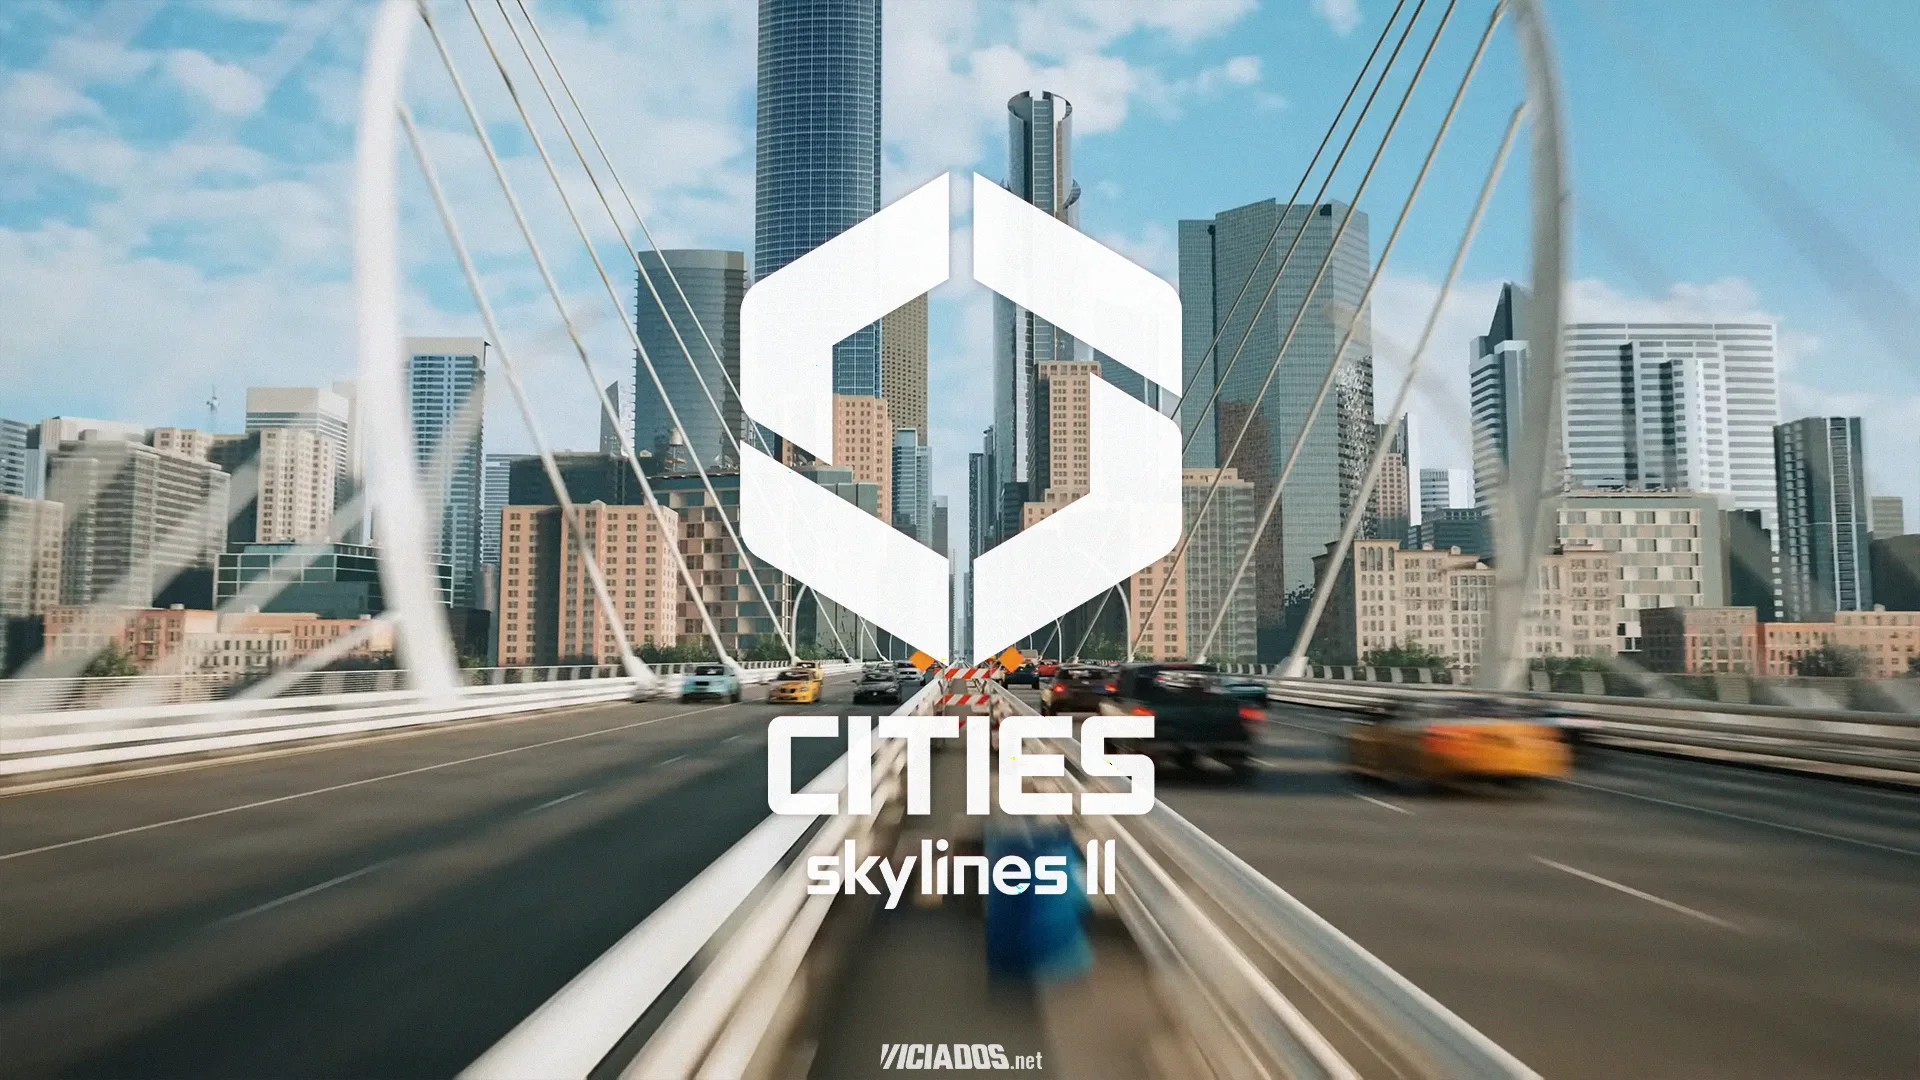 Cities Skylines 2 | Vídeo mostra a nova inteligência artificial de trânsito 2023 Viciados